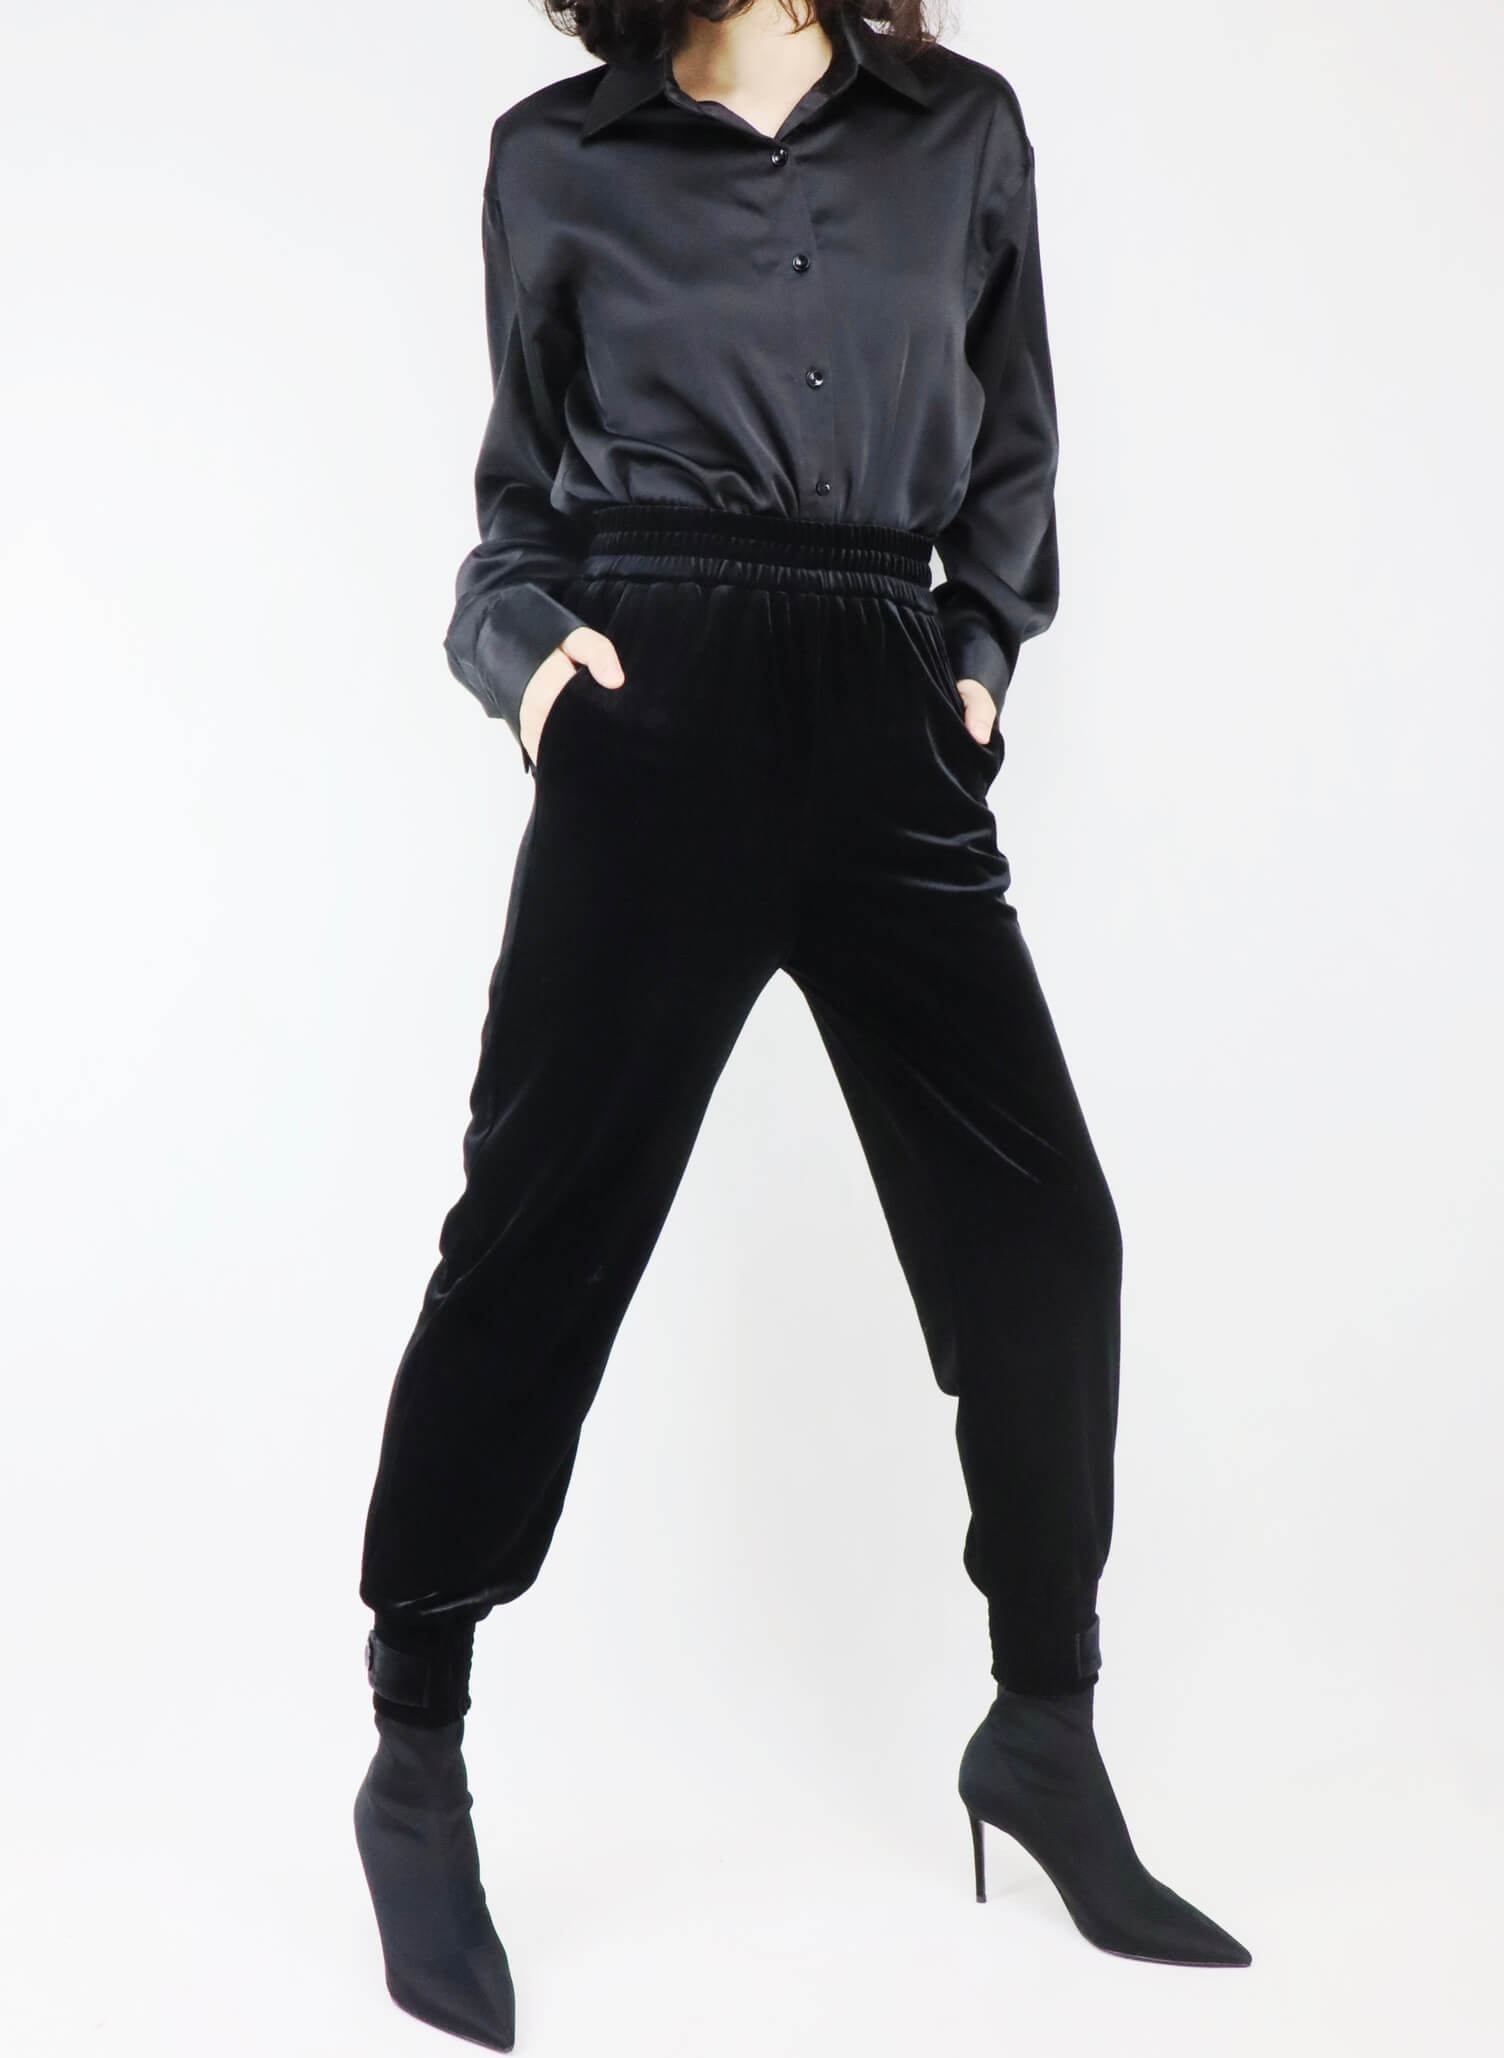 Black velvet trousers